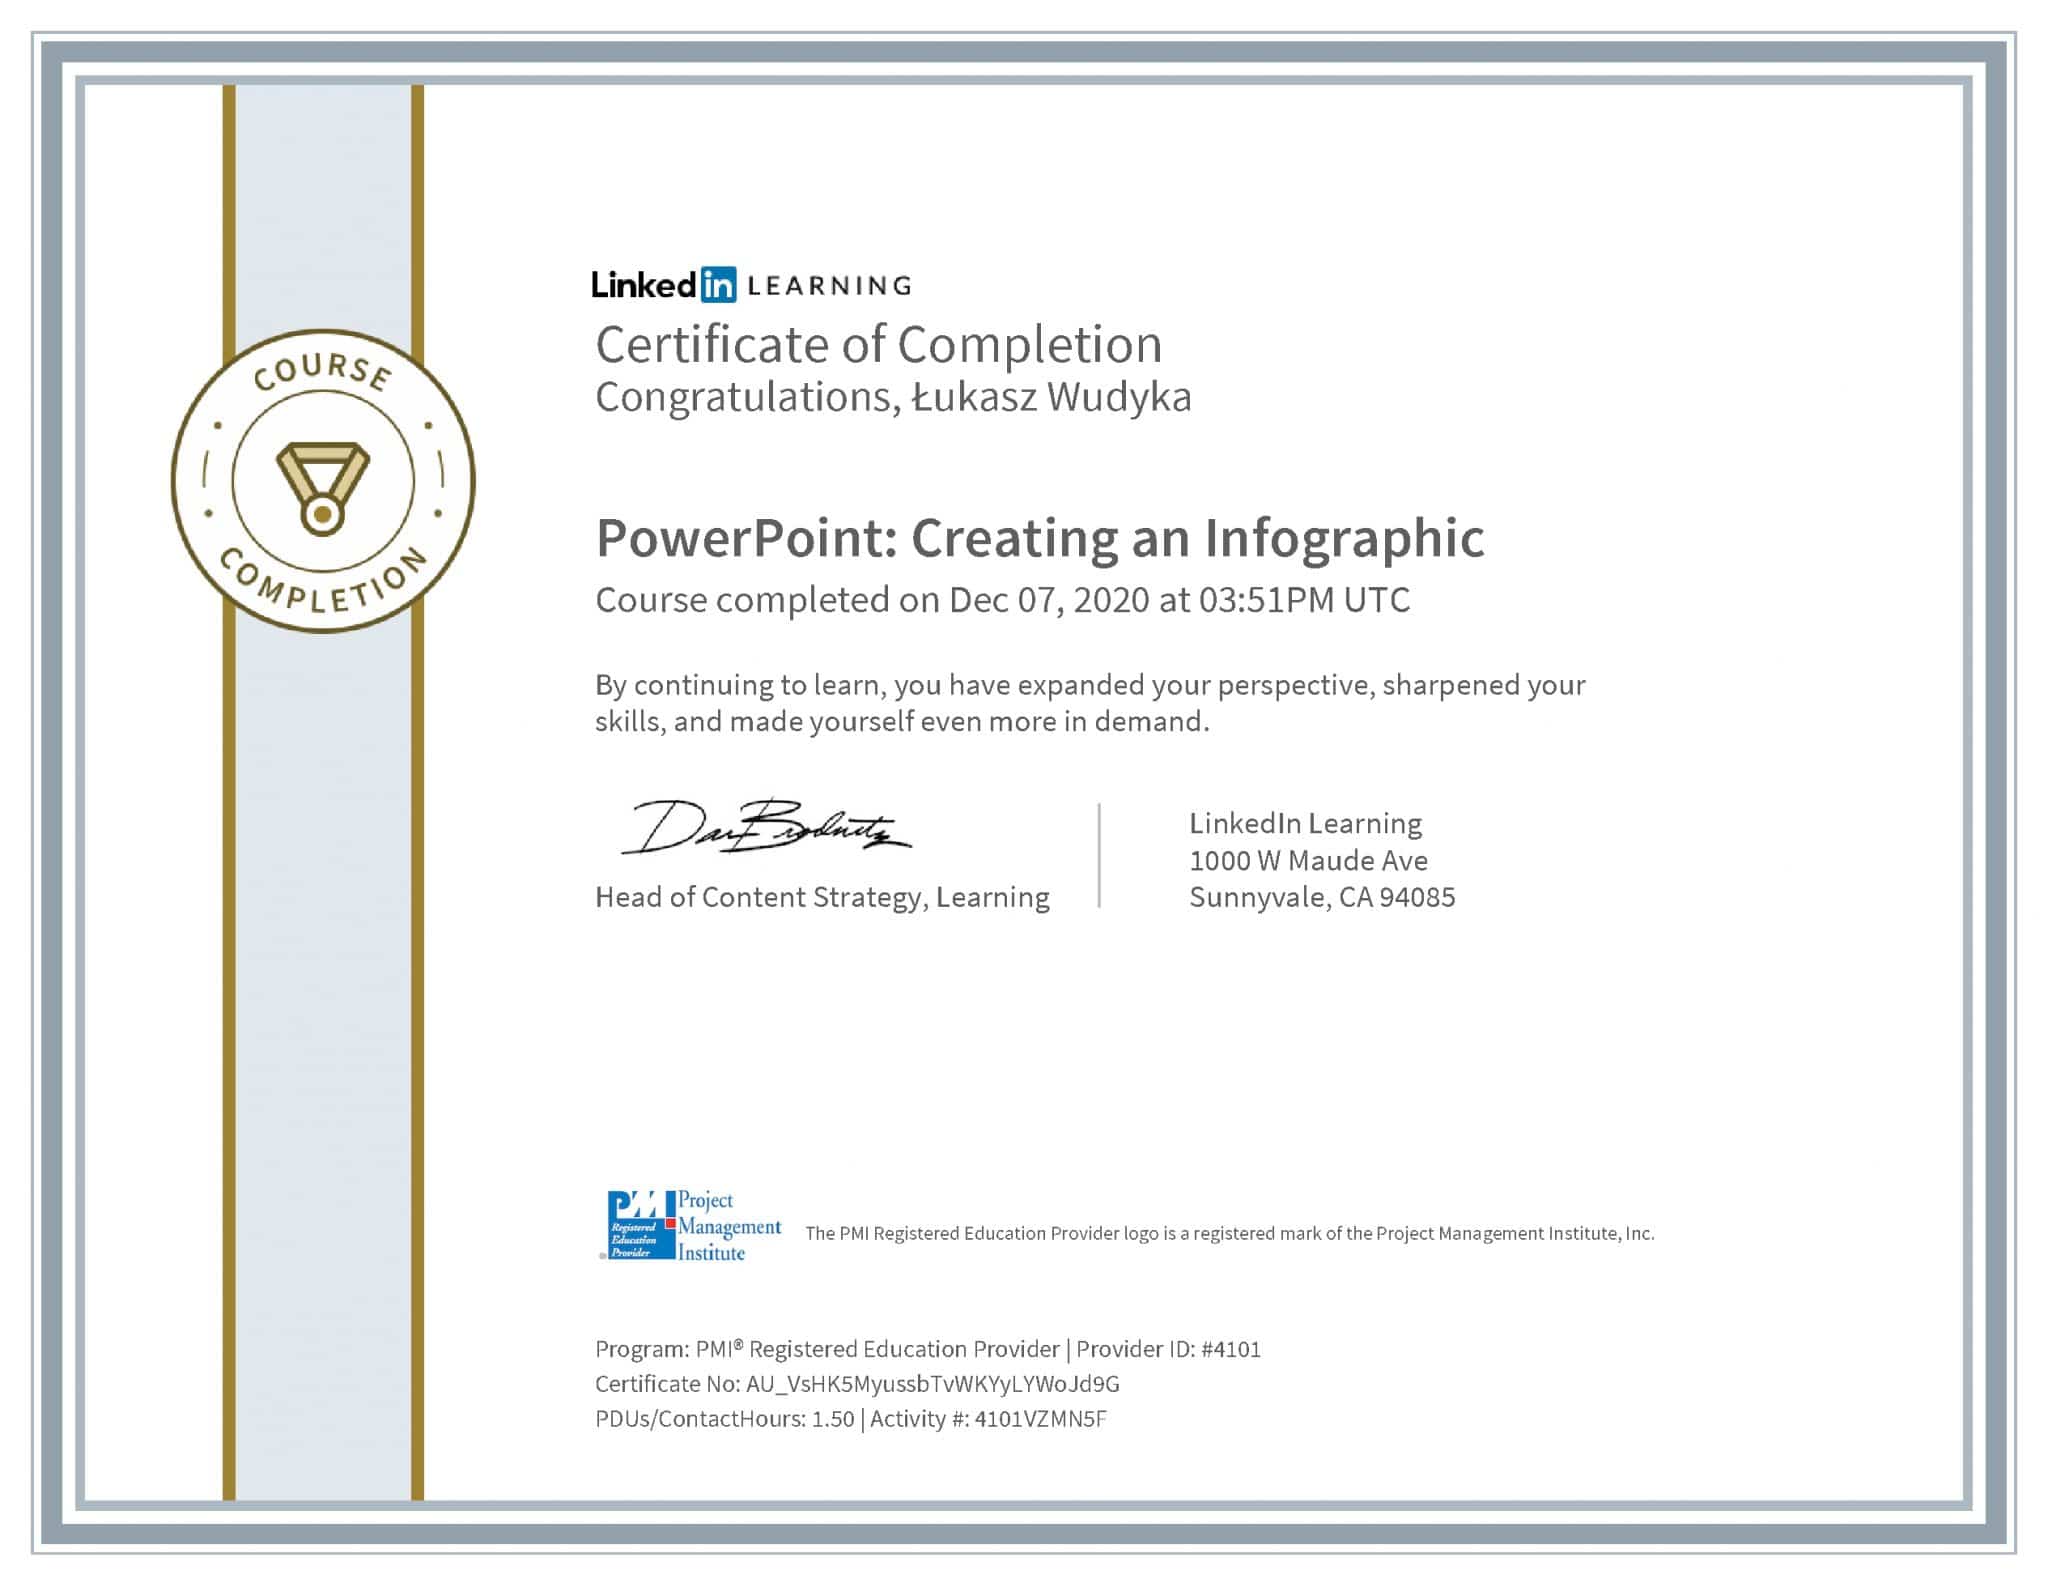 Łukasz Wudyka certyfikat LinkedIn PowerPoint: Creating an Infographic PMI